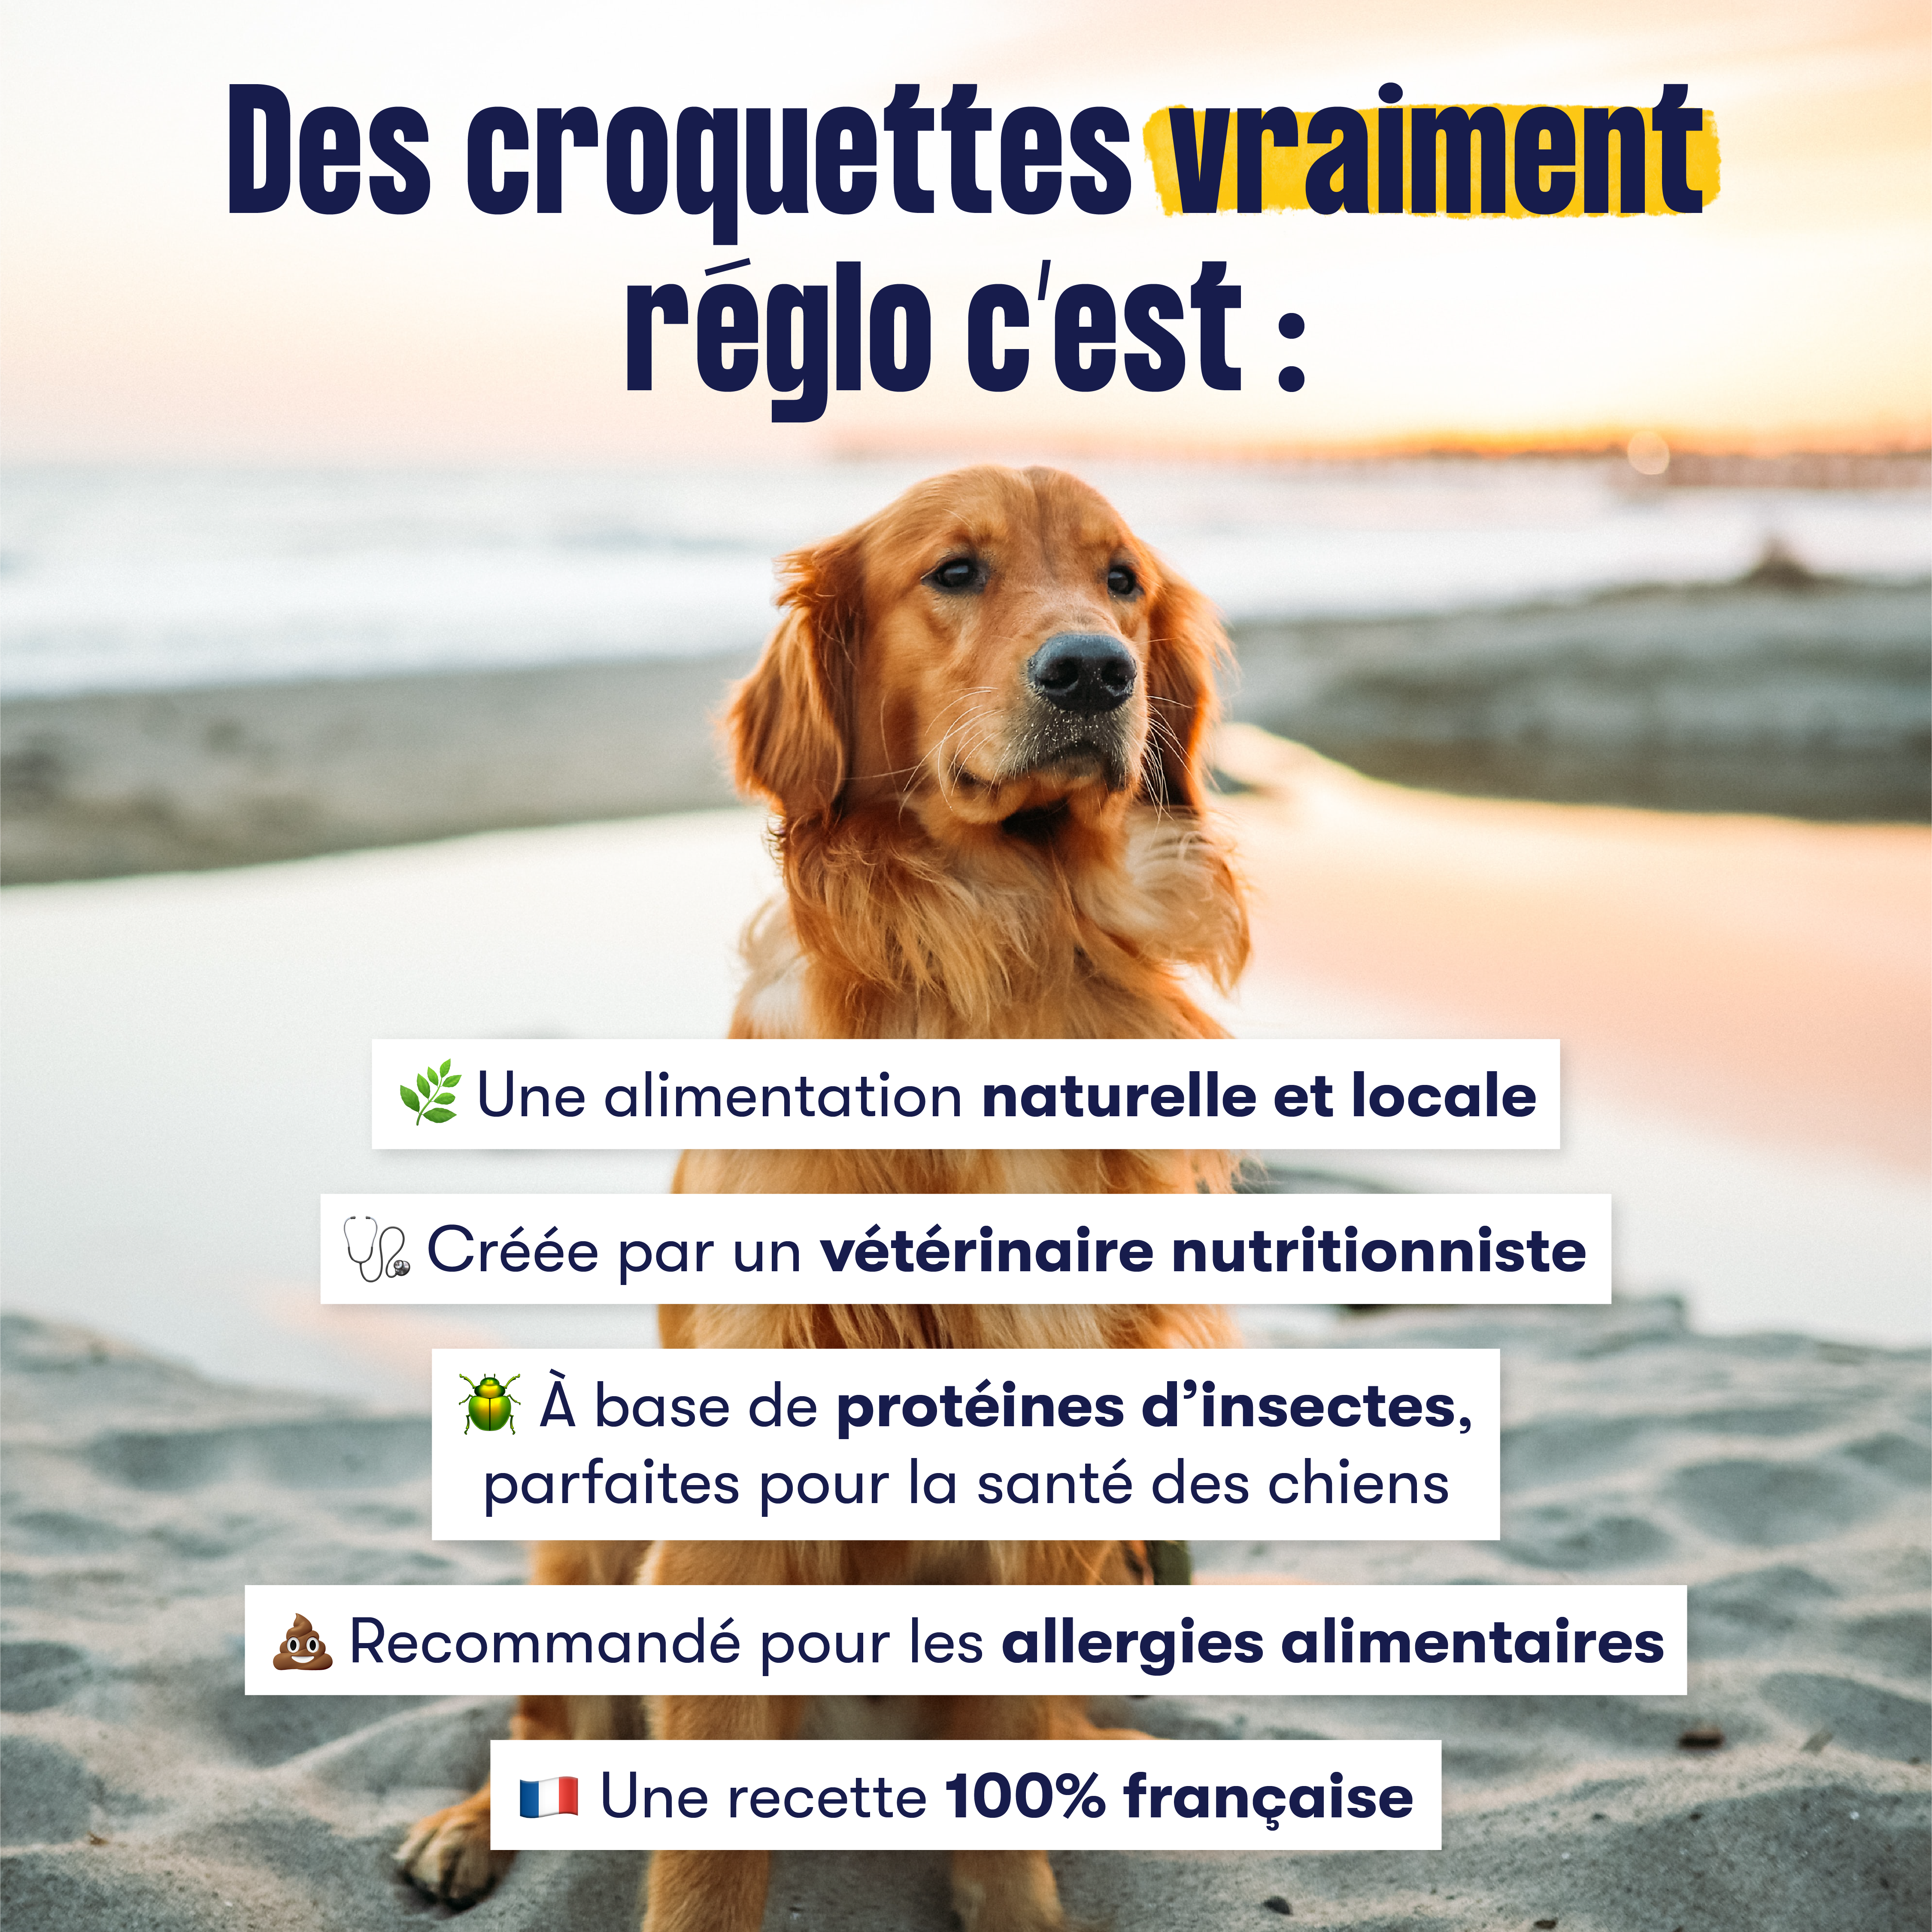 Publicité pour des croquettes pour chien à base d'insectes. Photos d'un chien sur la plage avec du texte par dessus qui énumère les bénéfices des croquettes.